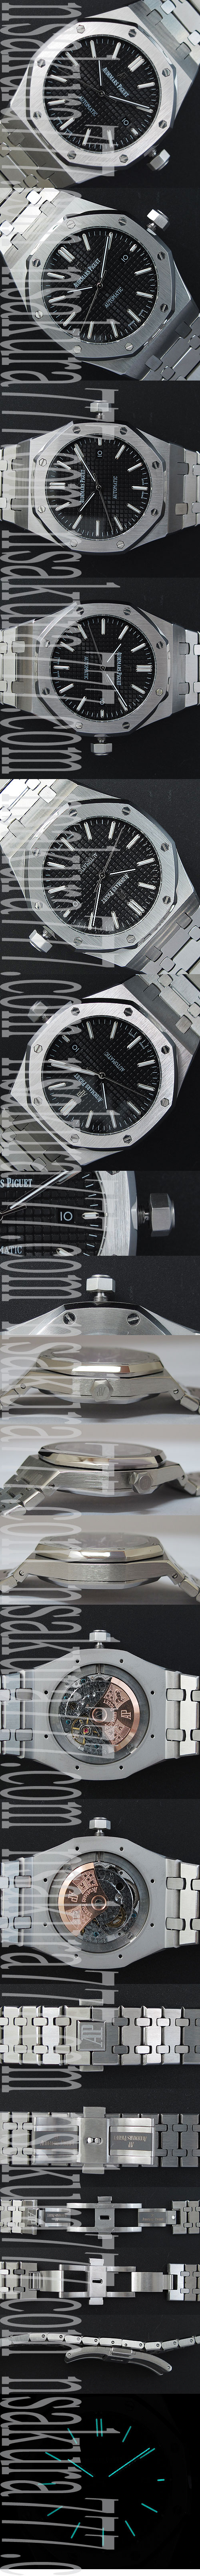 スーパーコピー時計オーデマピゲ ロイヤルオーク15450 (JF工場) - ウインドウを閉じる